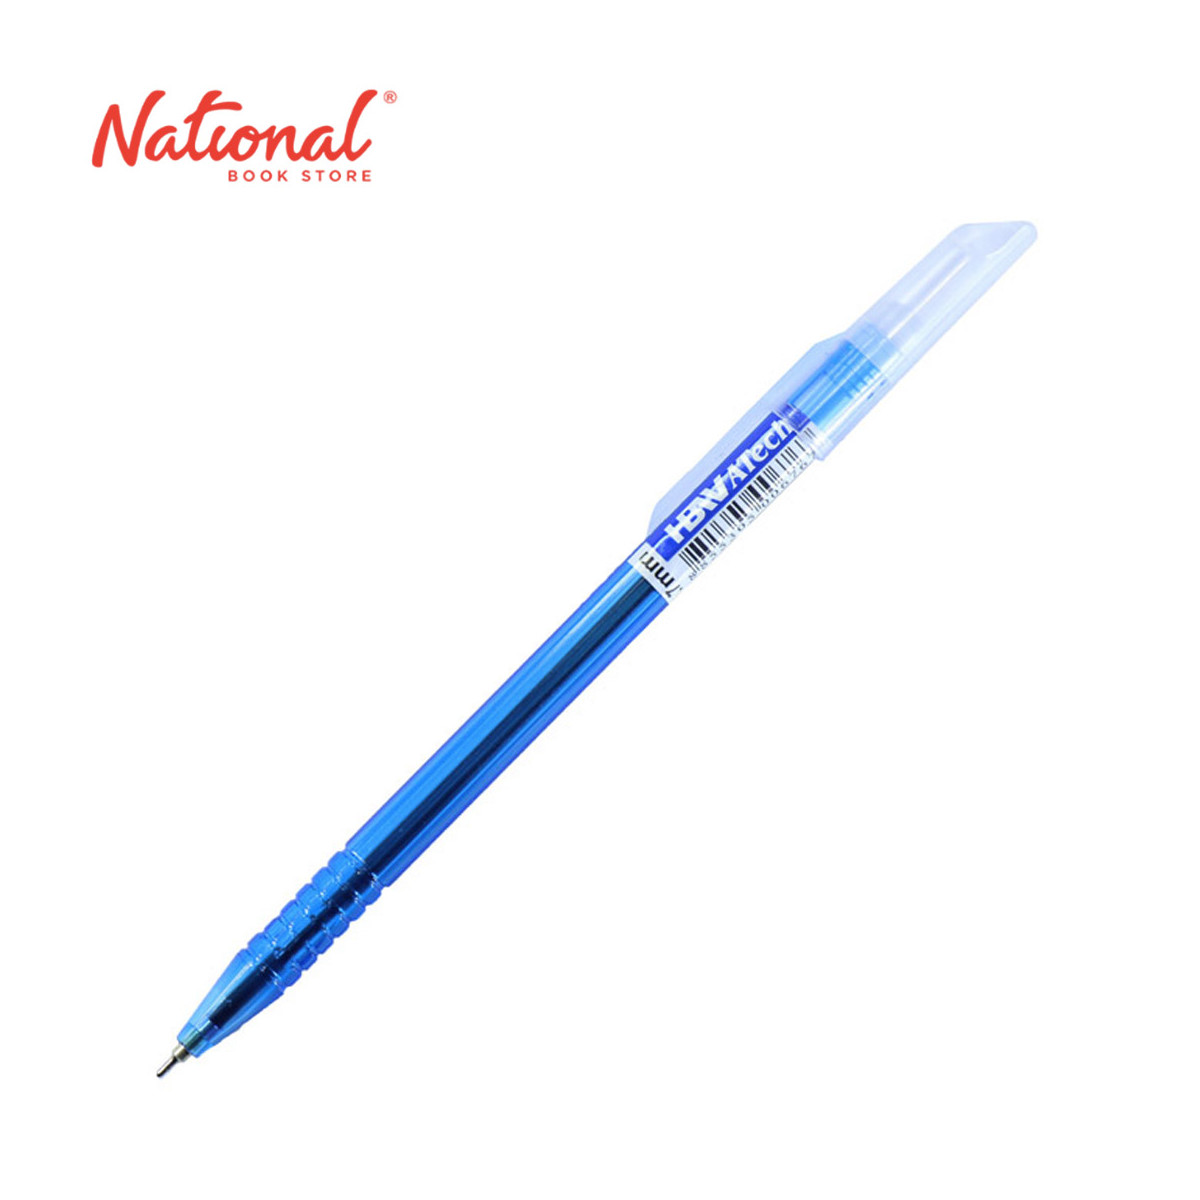 HBW O-Gel Tech Gel Pen 0.7mm Blue OBG-1 - Writing Supplies - School & Office Supplies